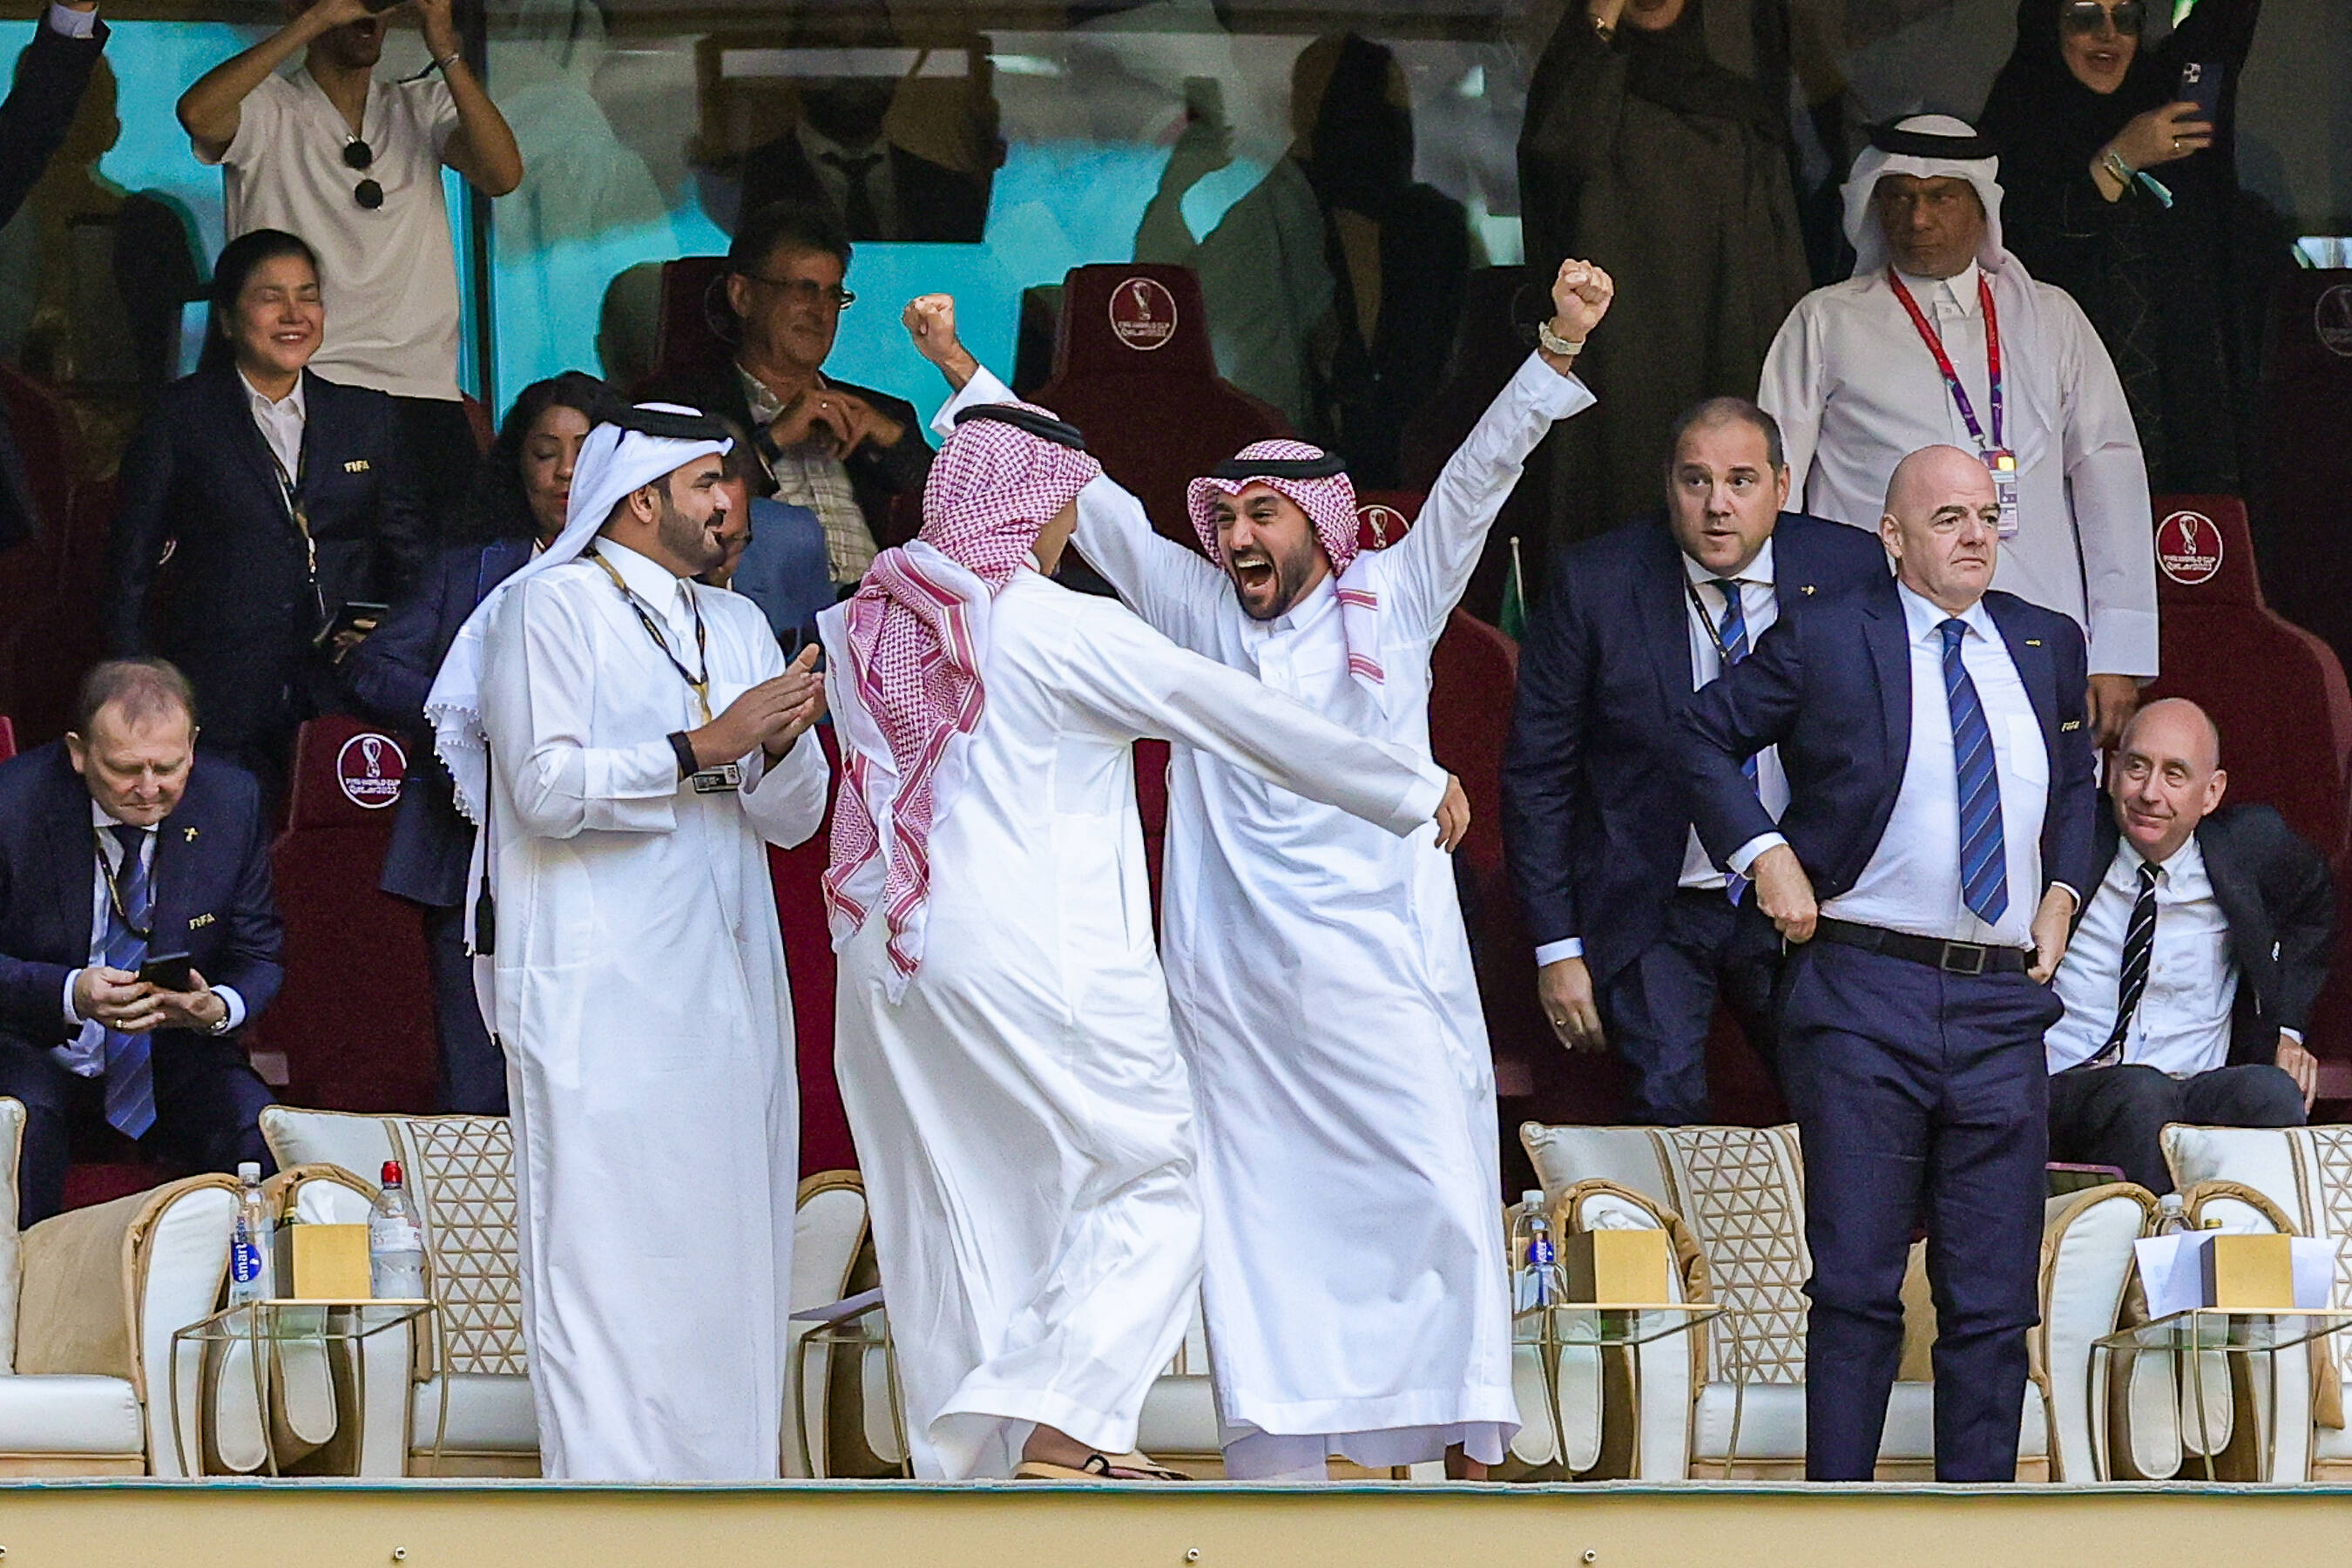 Saudi-Arabien schlägt Argentinien bei WM in Katar Königshaus ordnet Feiertag am Mittwoch an